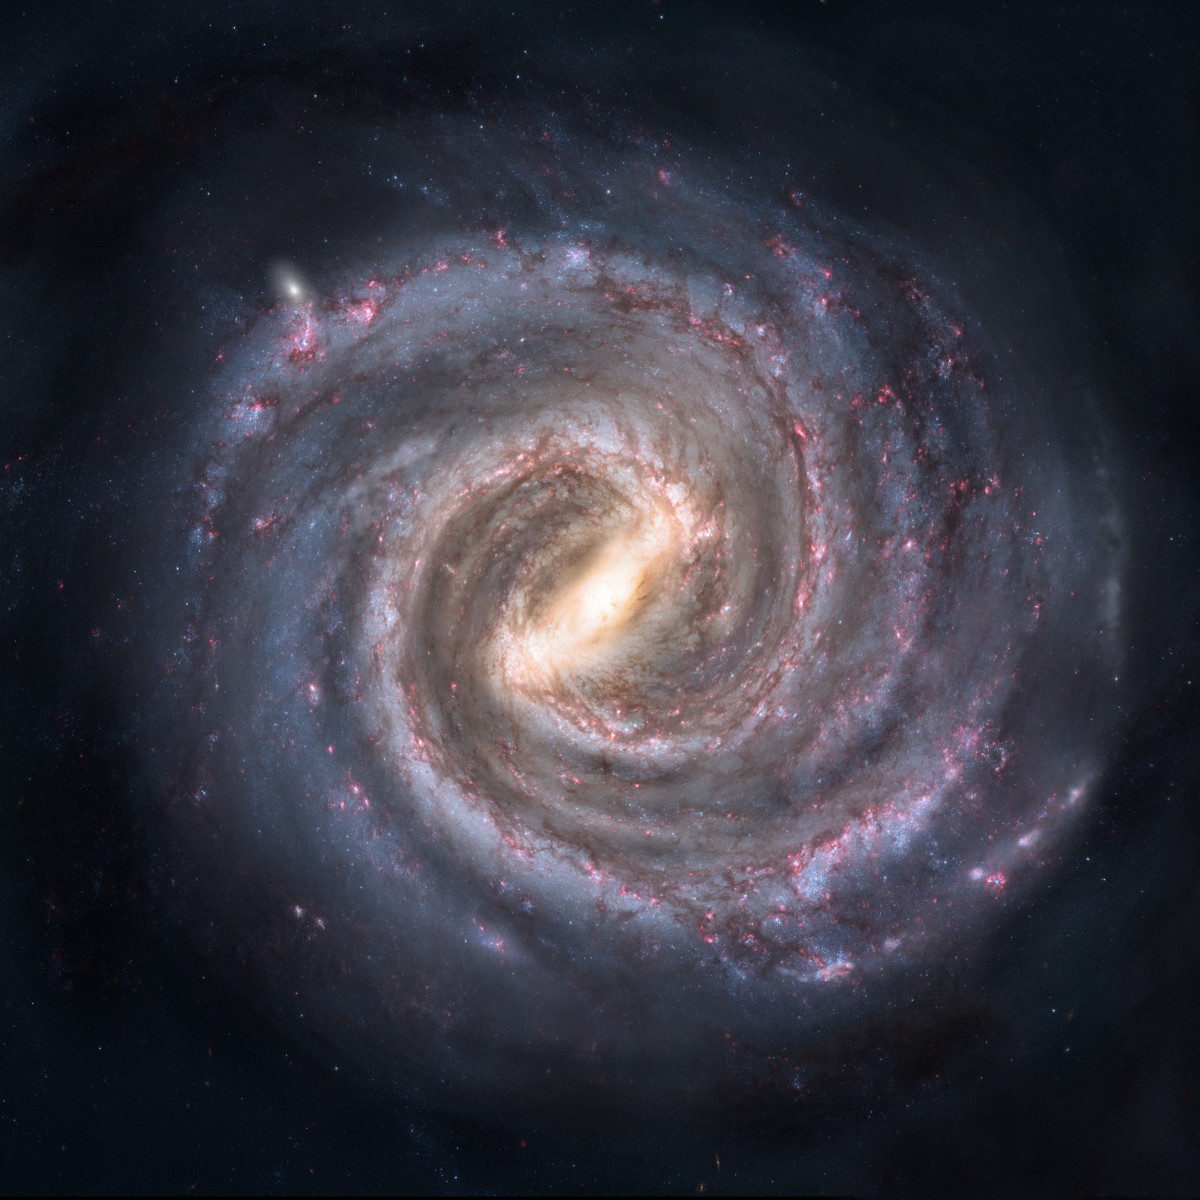 费米悖论的问题是:如果外星生命在我们的银河系中可能如此丰富，那么它们在哪里?